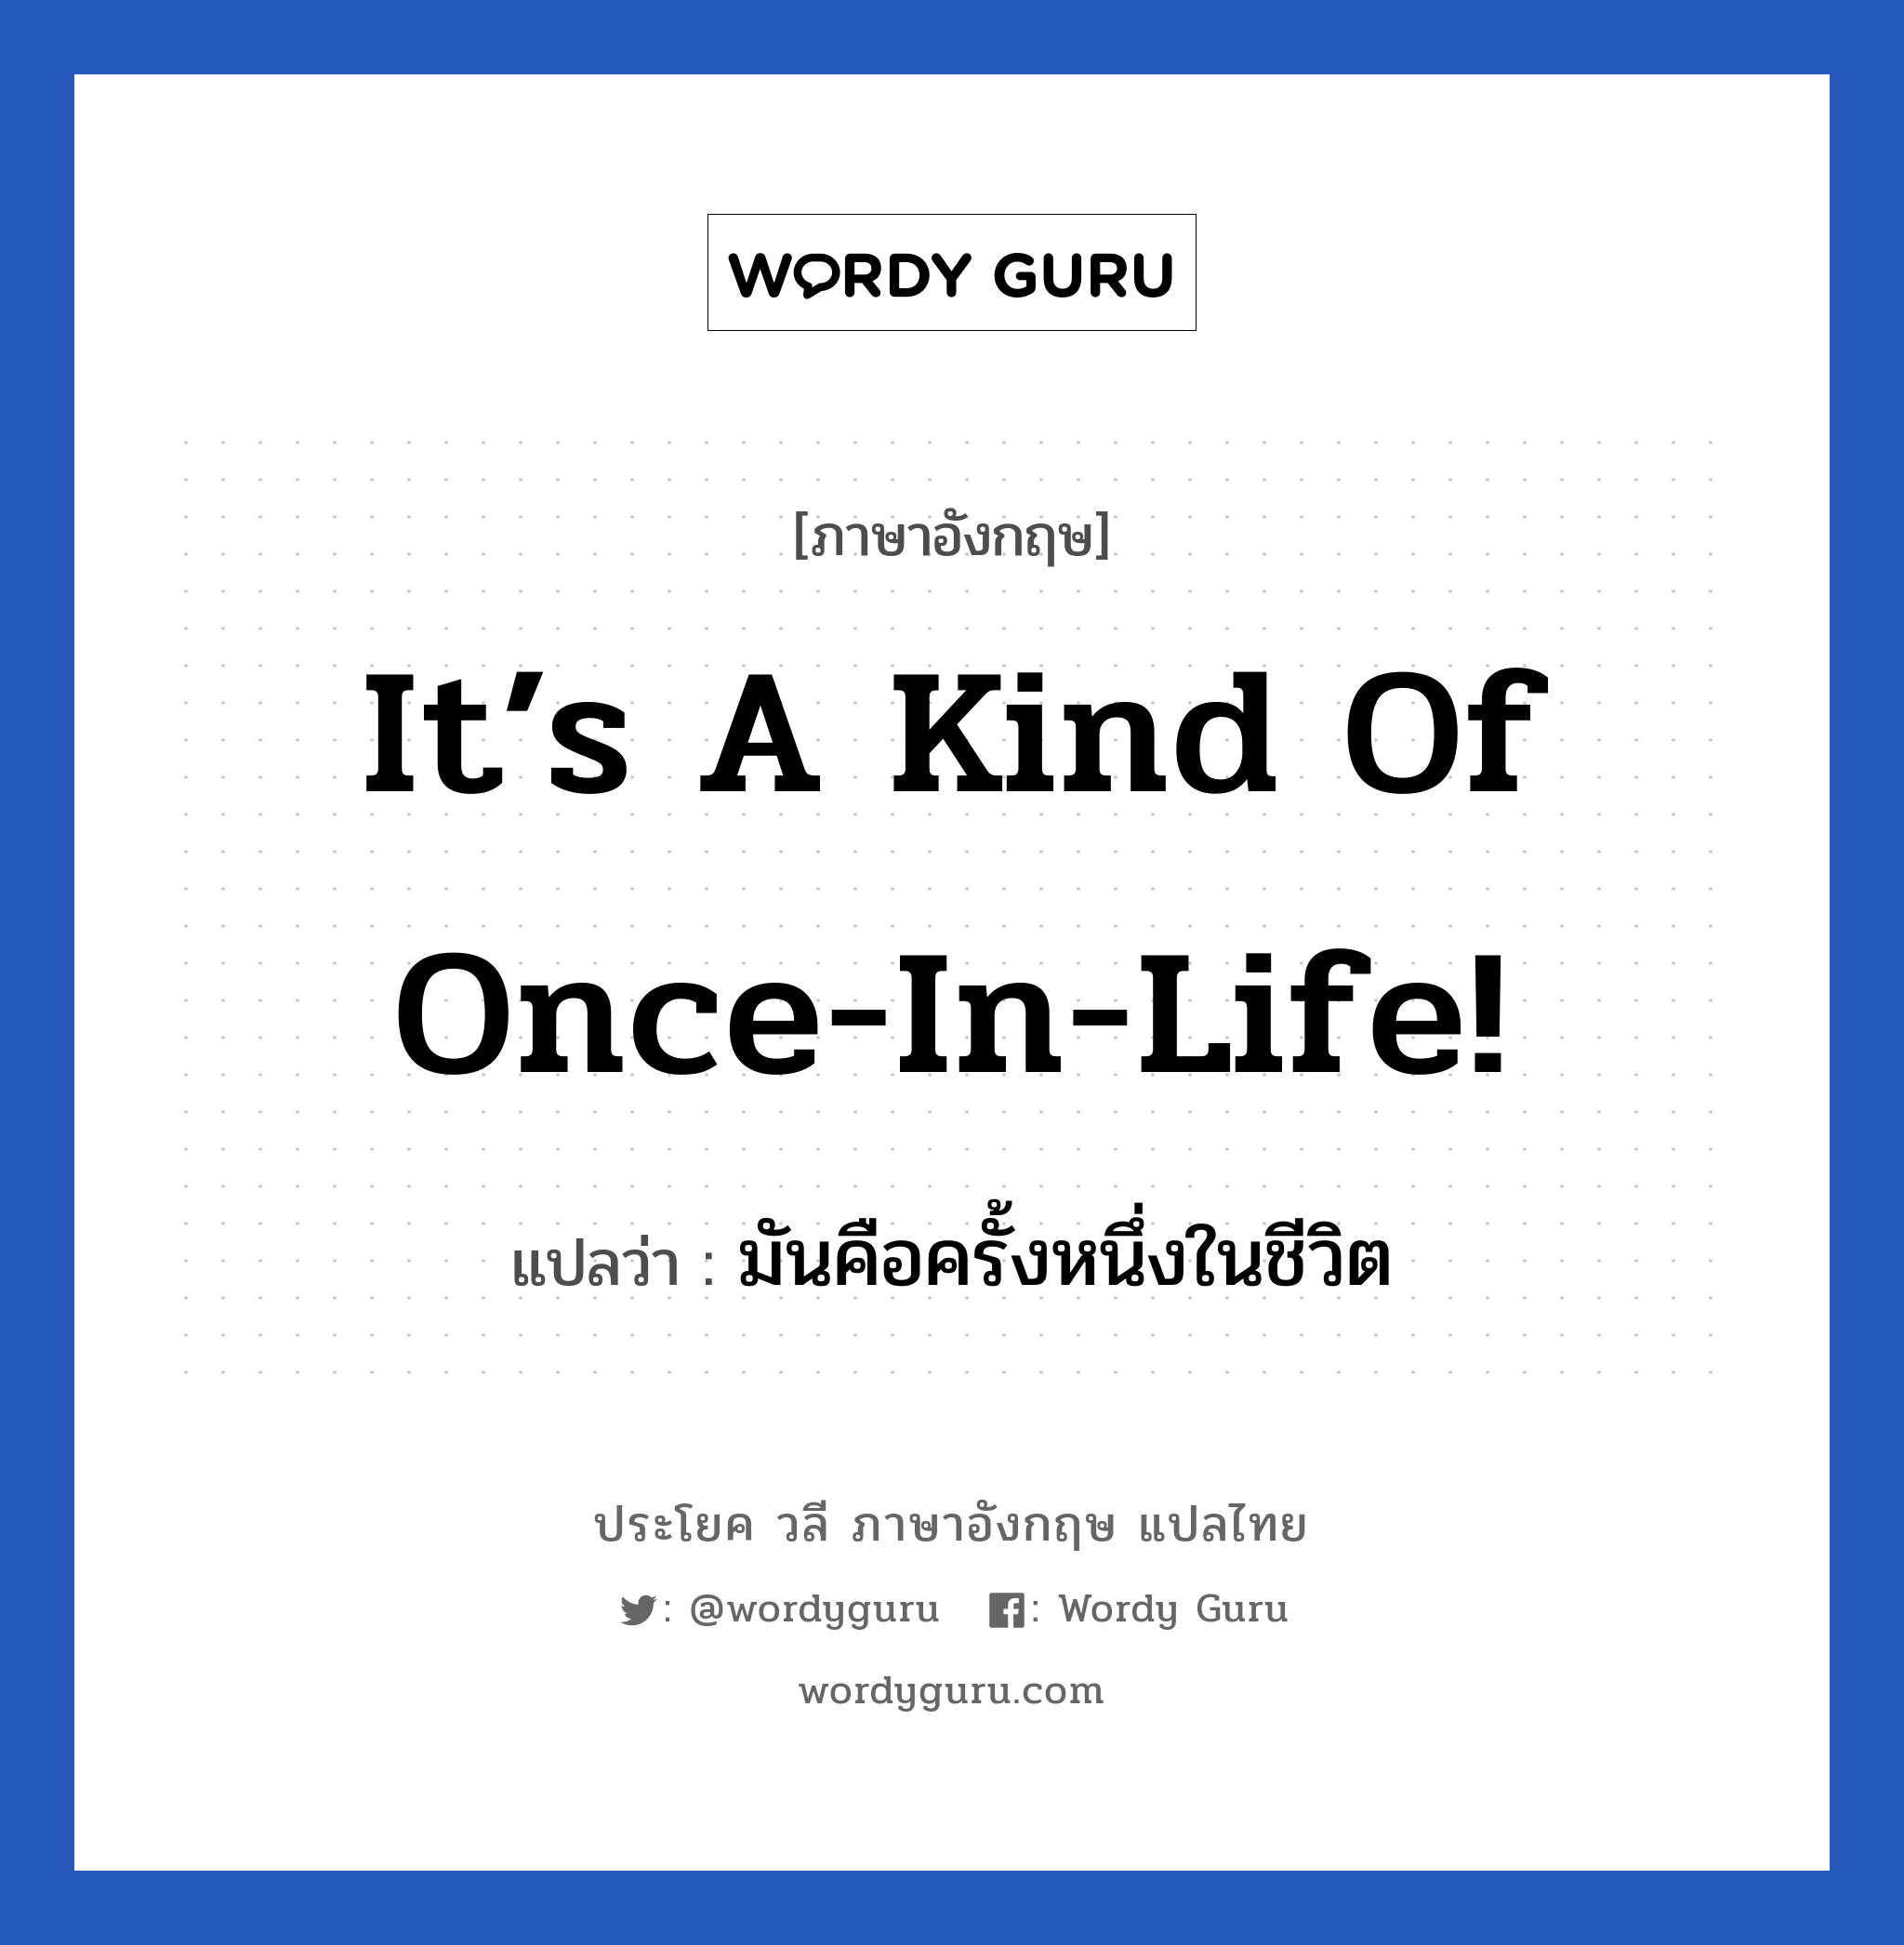 มันคือครั้งหนึ่งในชีวิต ภาษาอังกฤษ?, วลีภาษาอังกฤษ มันคือครั้งหนึ่งในชีวิต แปลว่า It’s a kind of once-in-life!